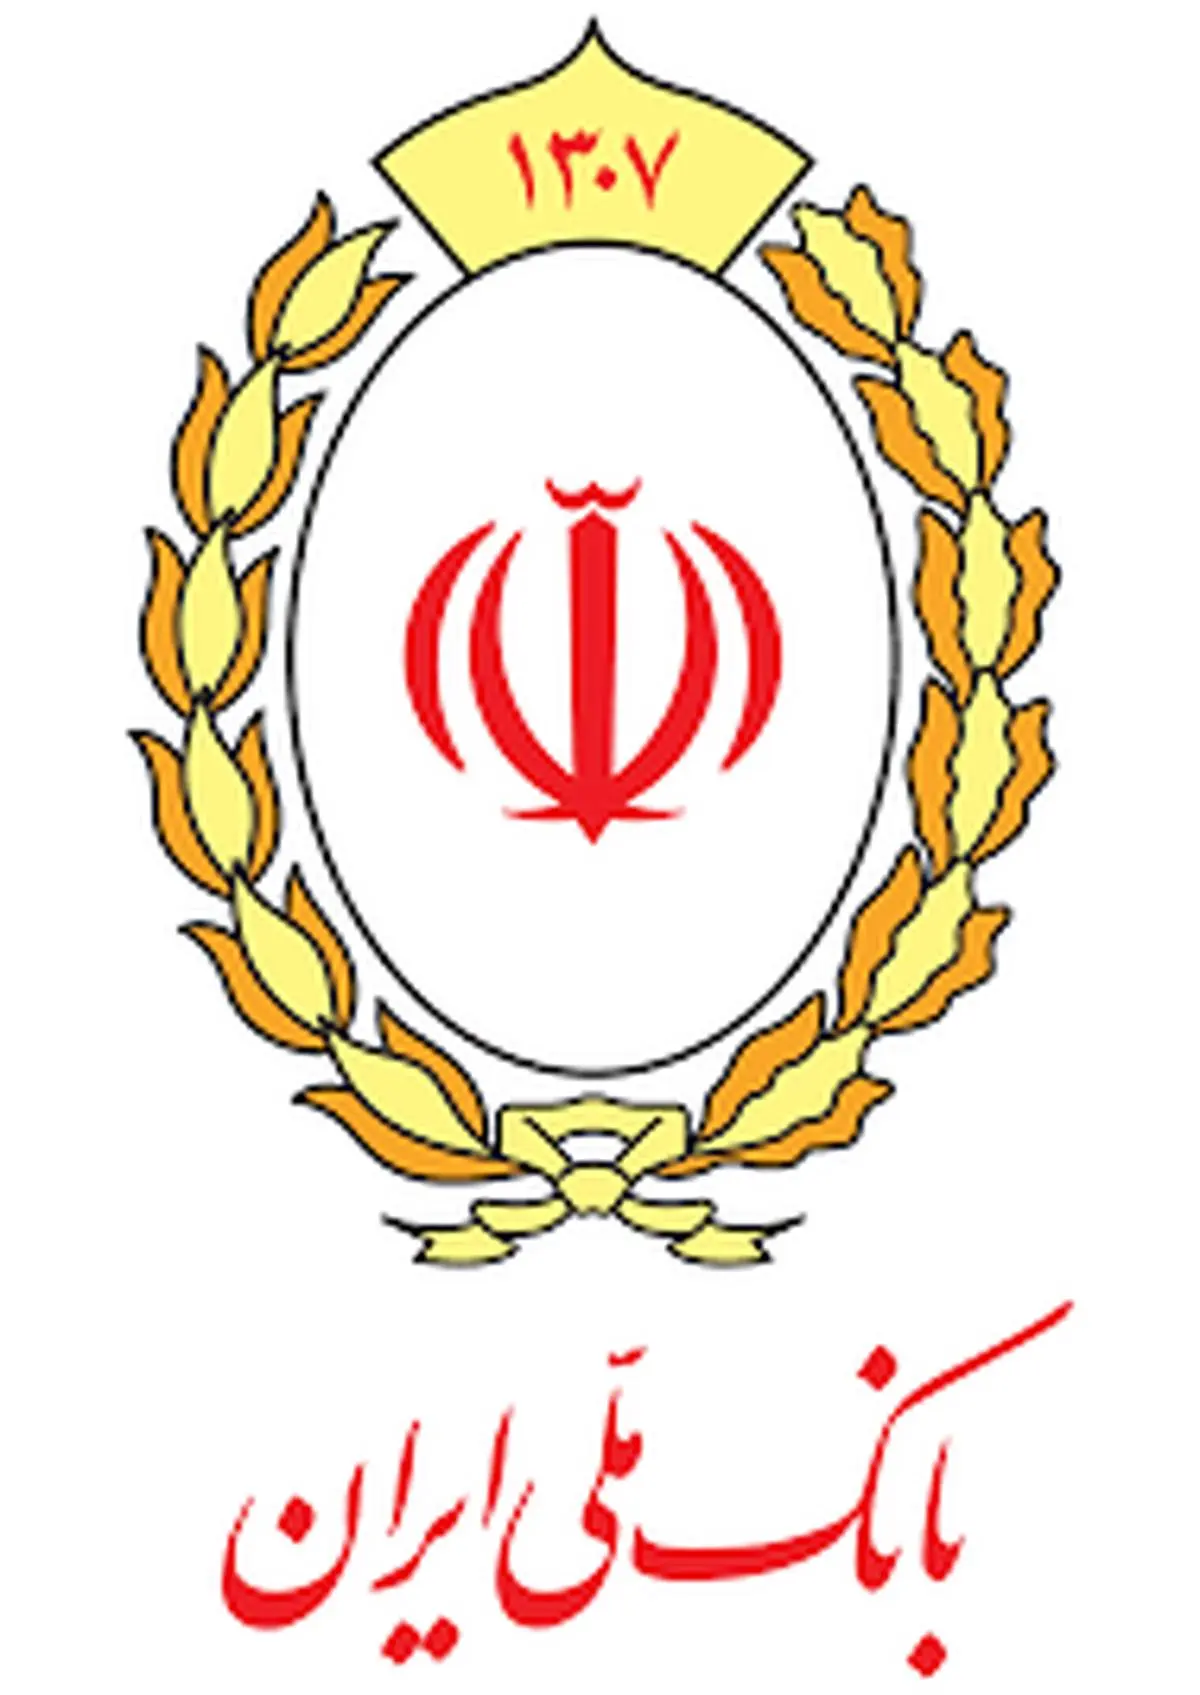 اقتصاد ایران به شدت بانک محور است